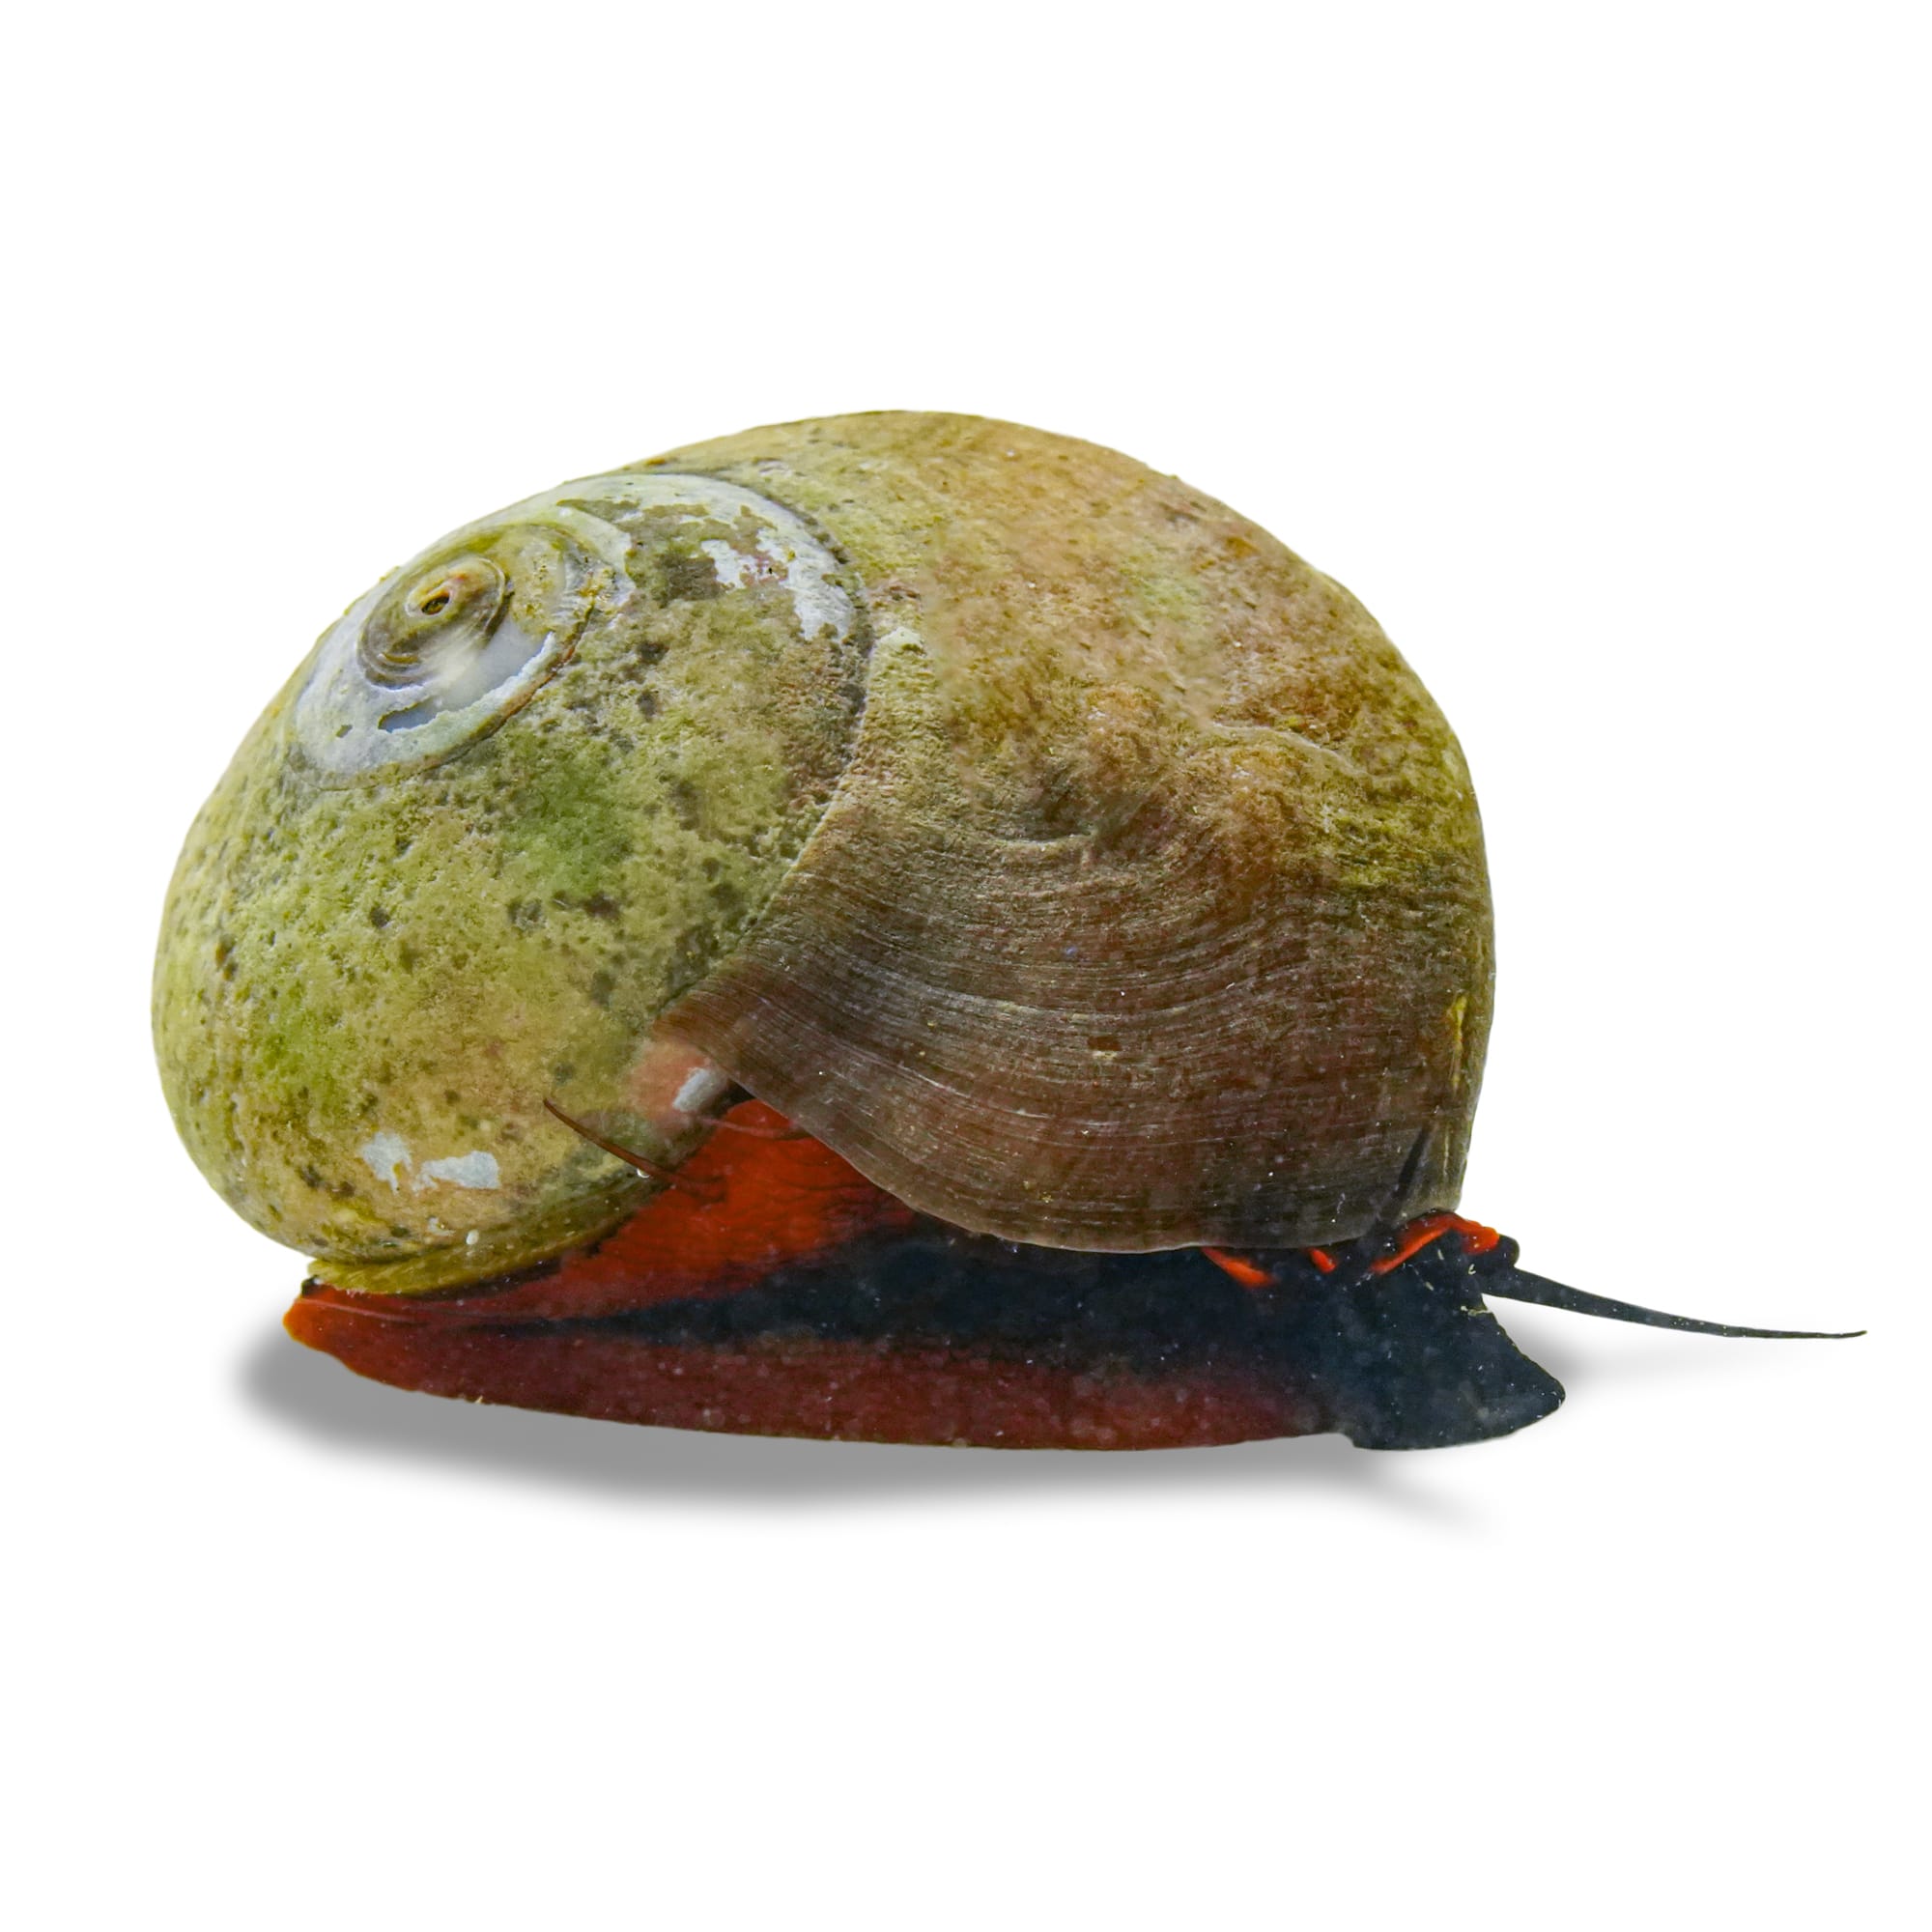 Red Collar Snail (Norrisia norrisi) | Petco